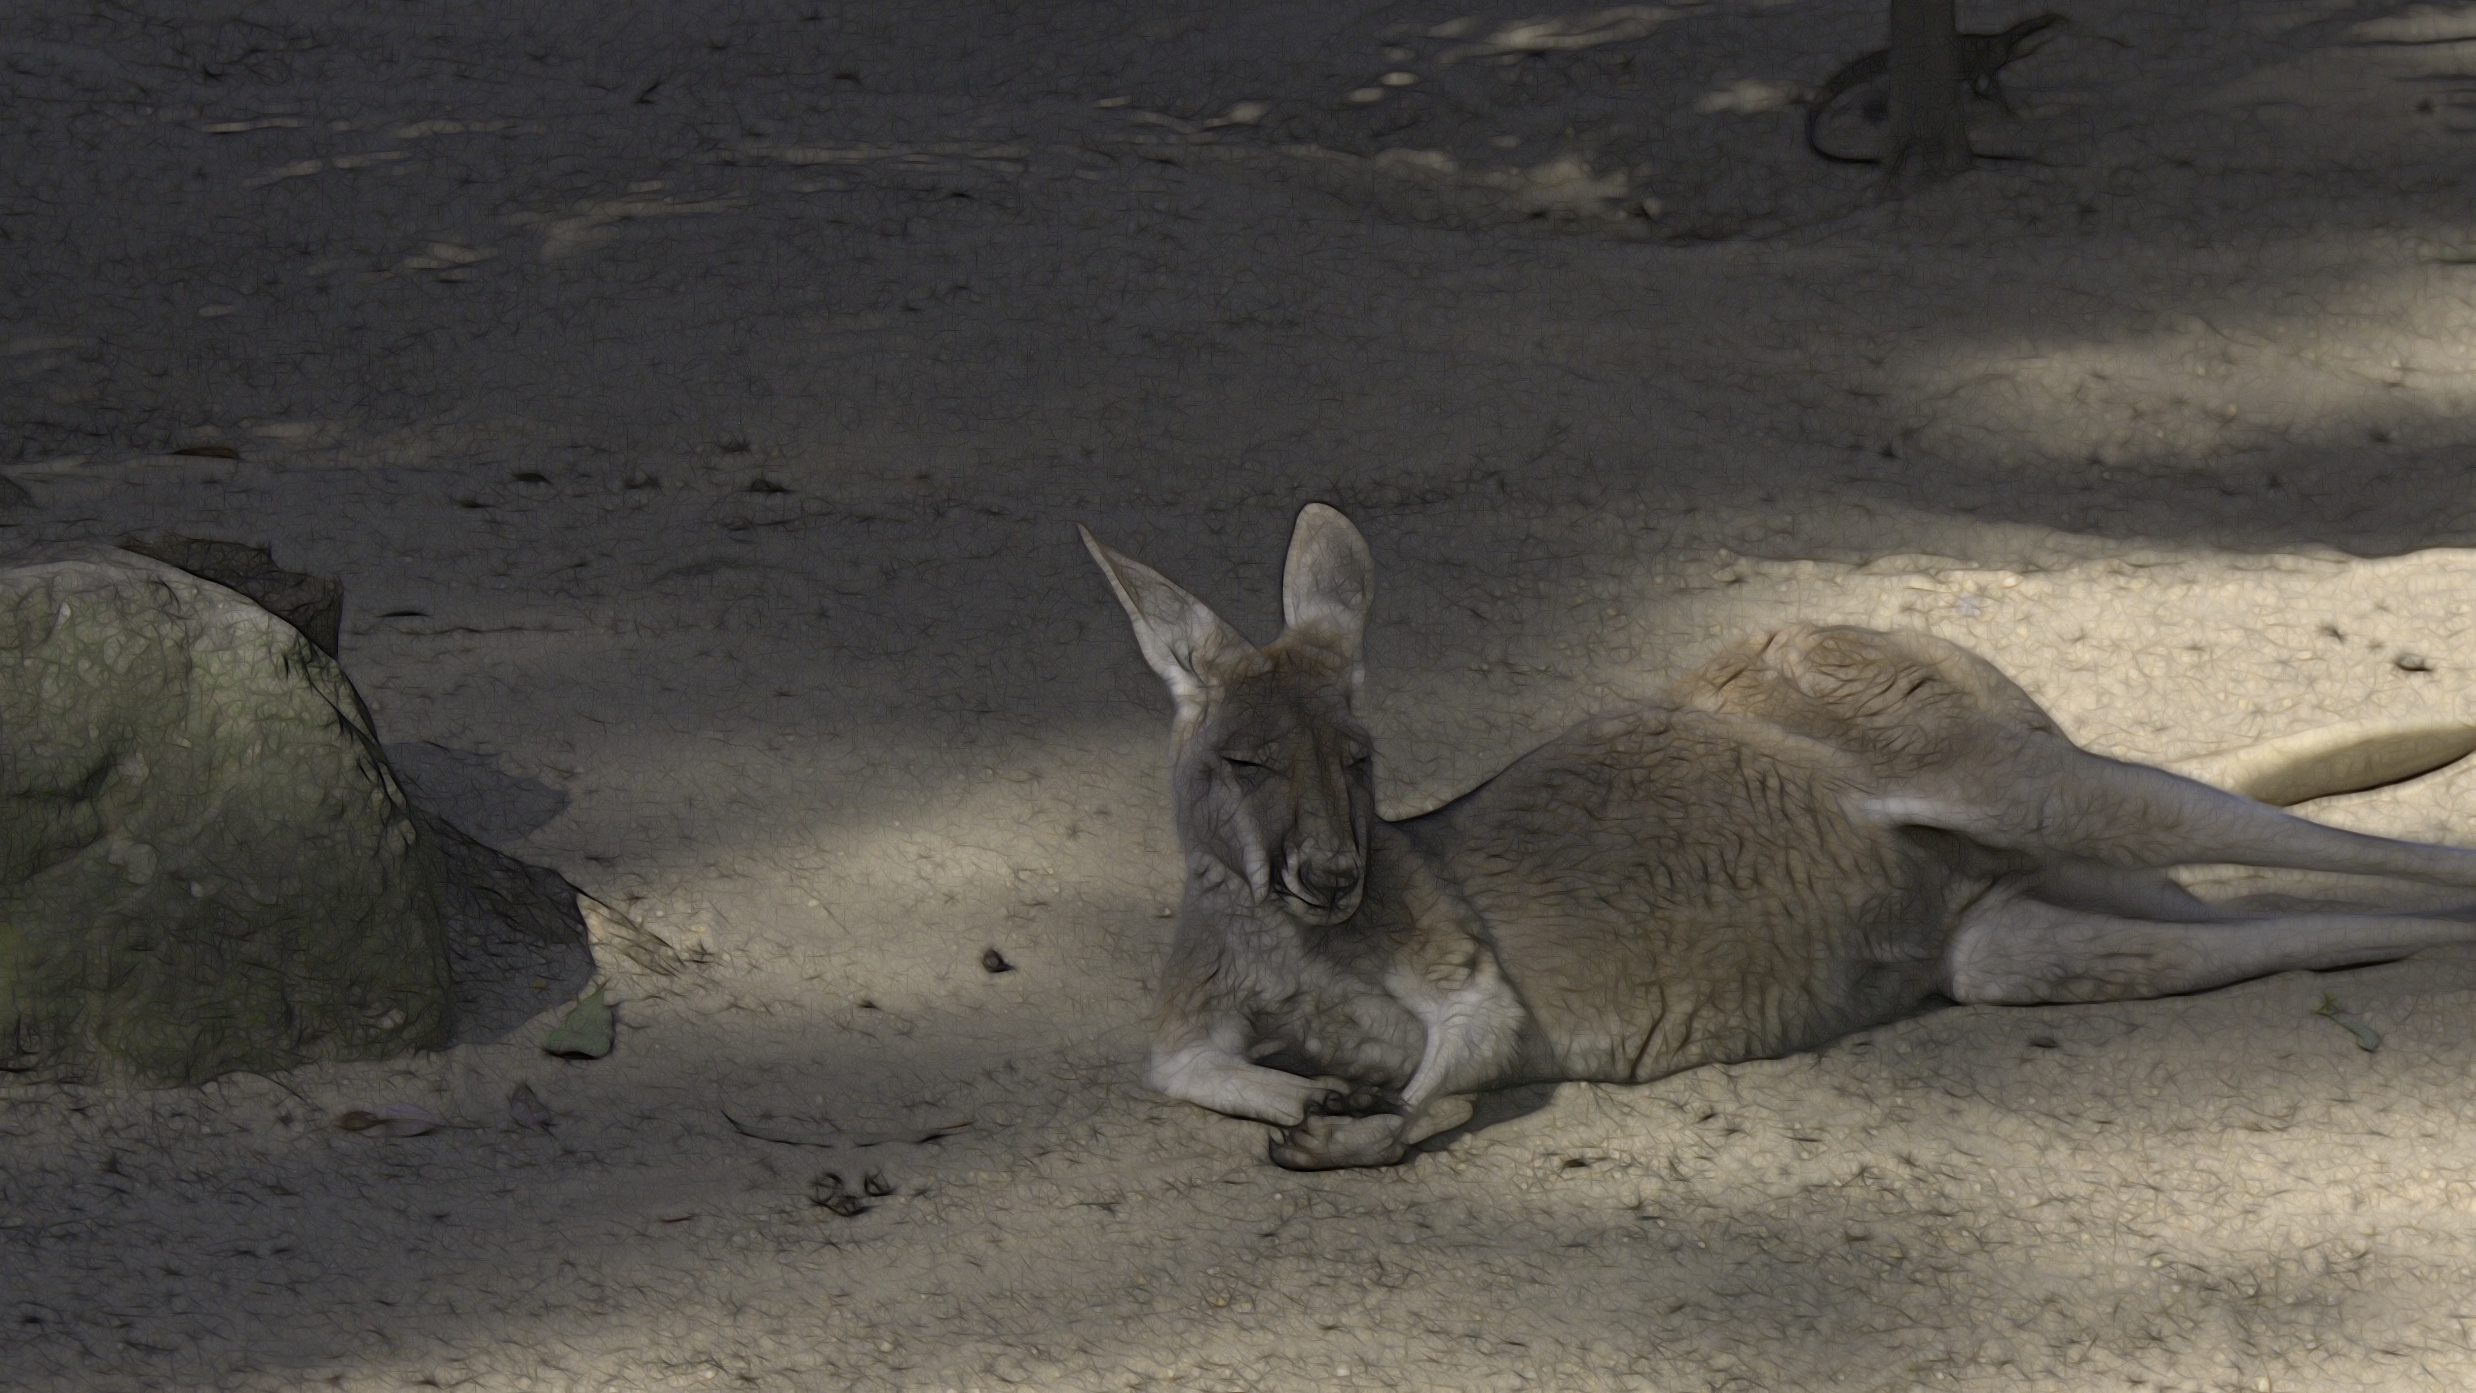 a kangaroo reclingin near a rock at the Taronga Zoo